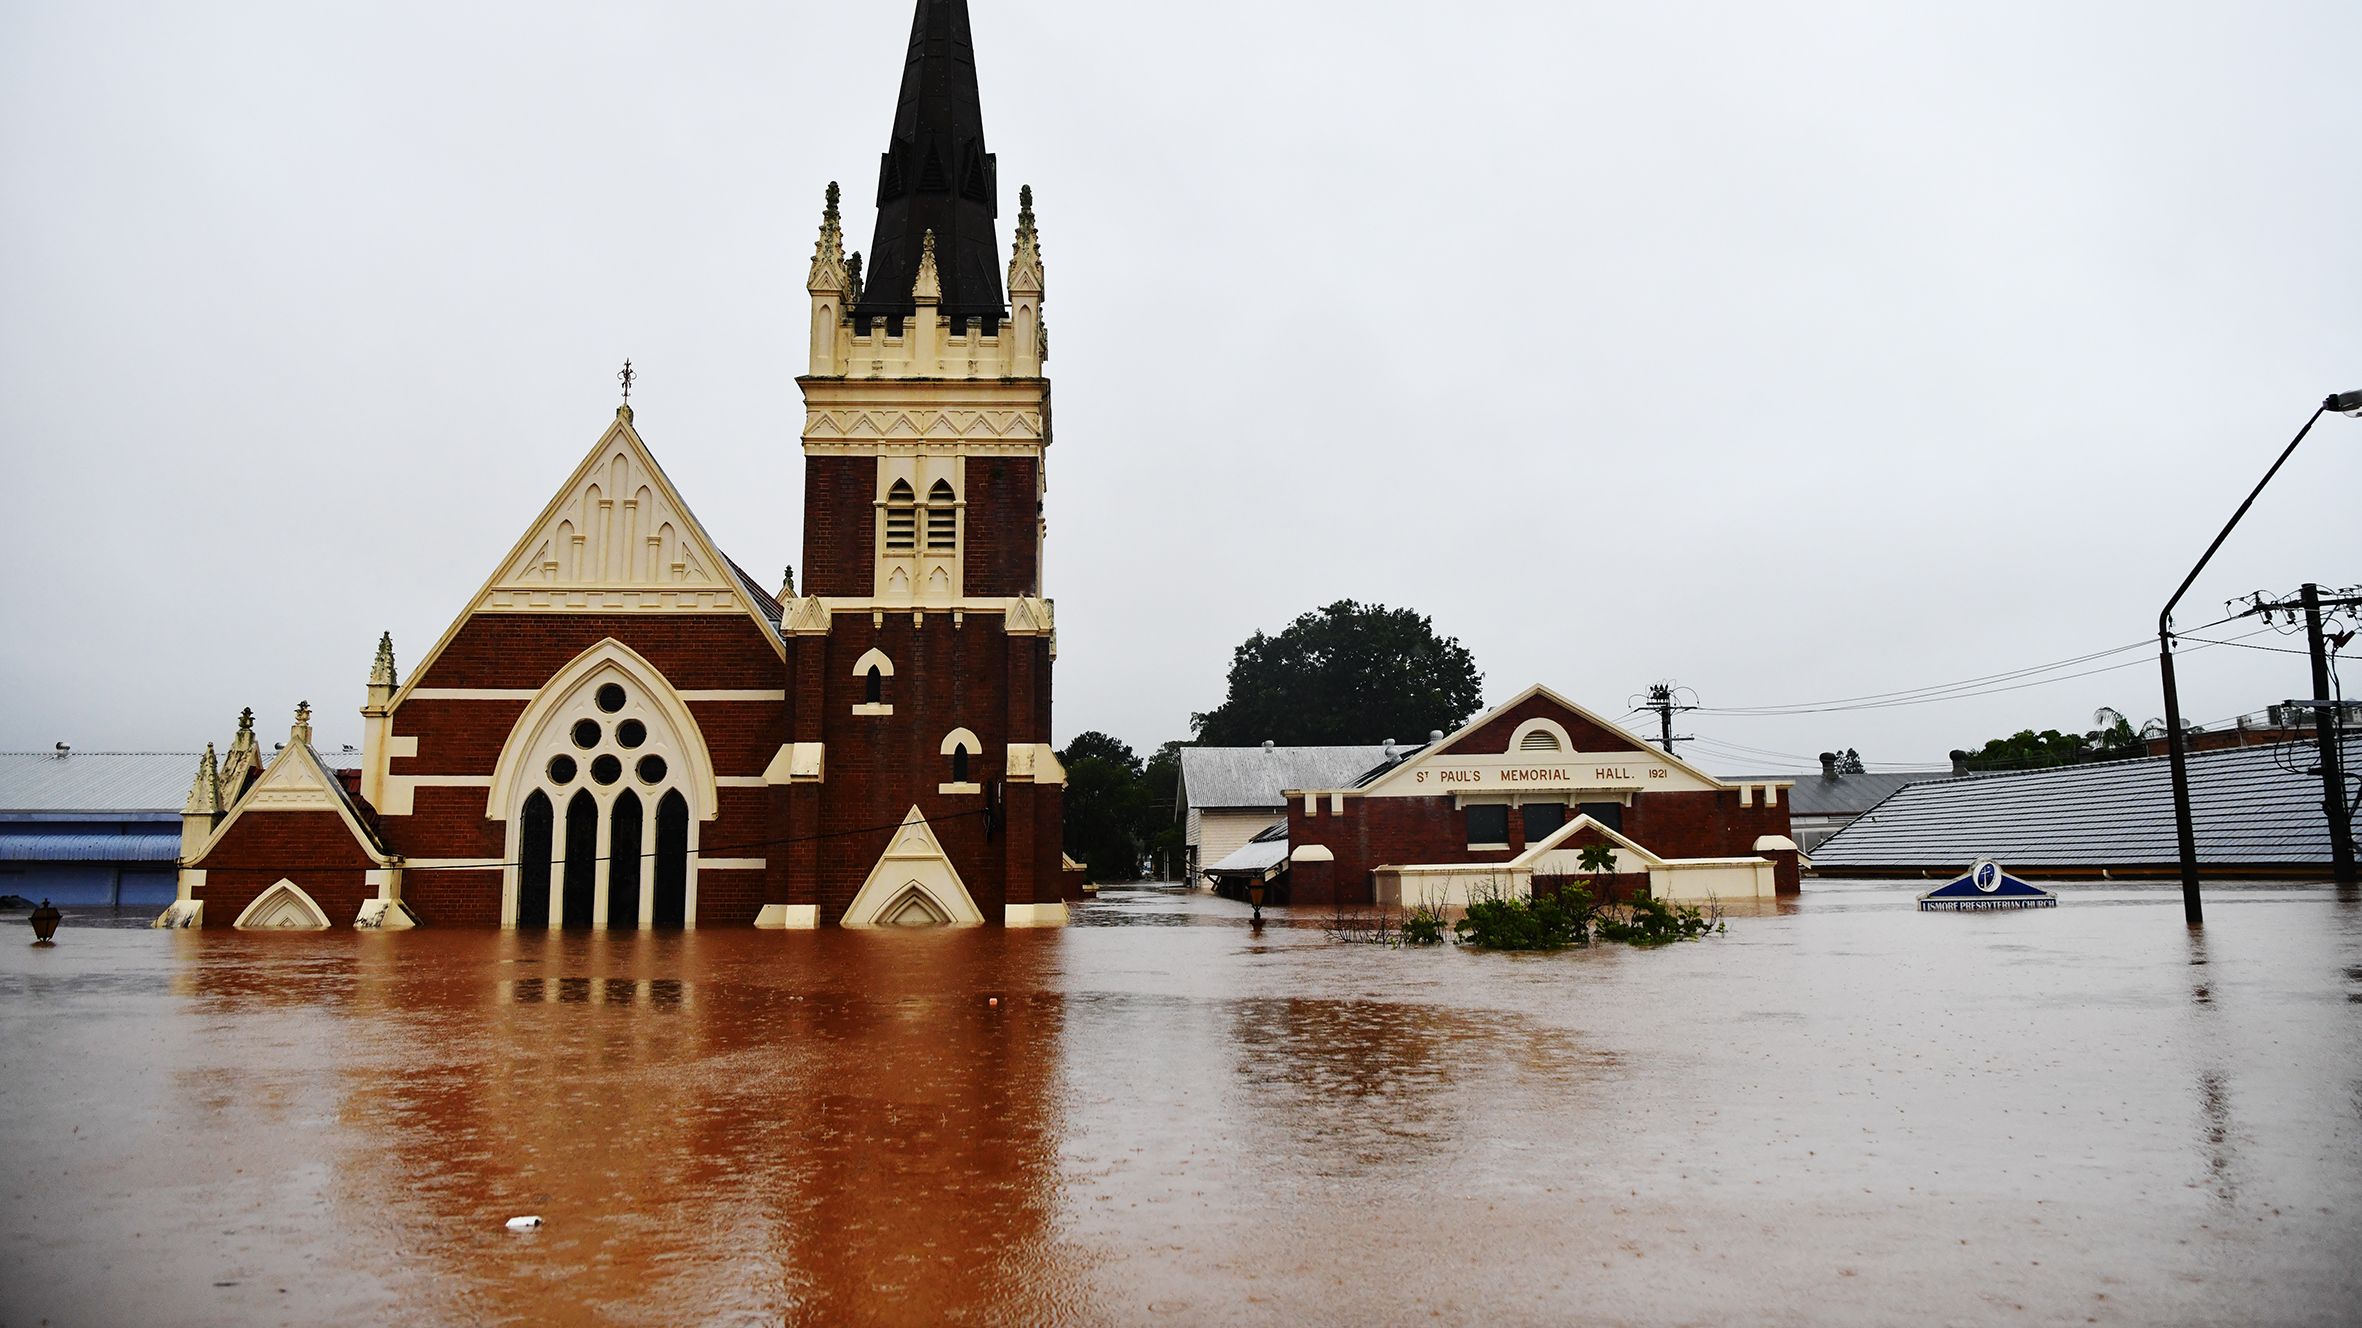 Lunedi, 28 febbraio 2022, gravi inondazioni hanno colpito Lismore nel nord del New South Wales nella peggiore inondazione mai registrata. Foto: Elise Derwin/SMH.